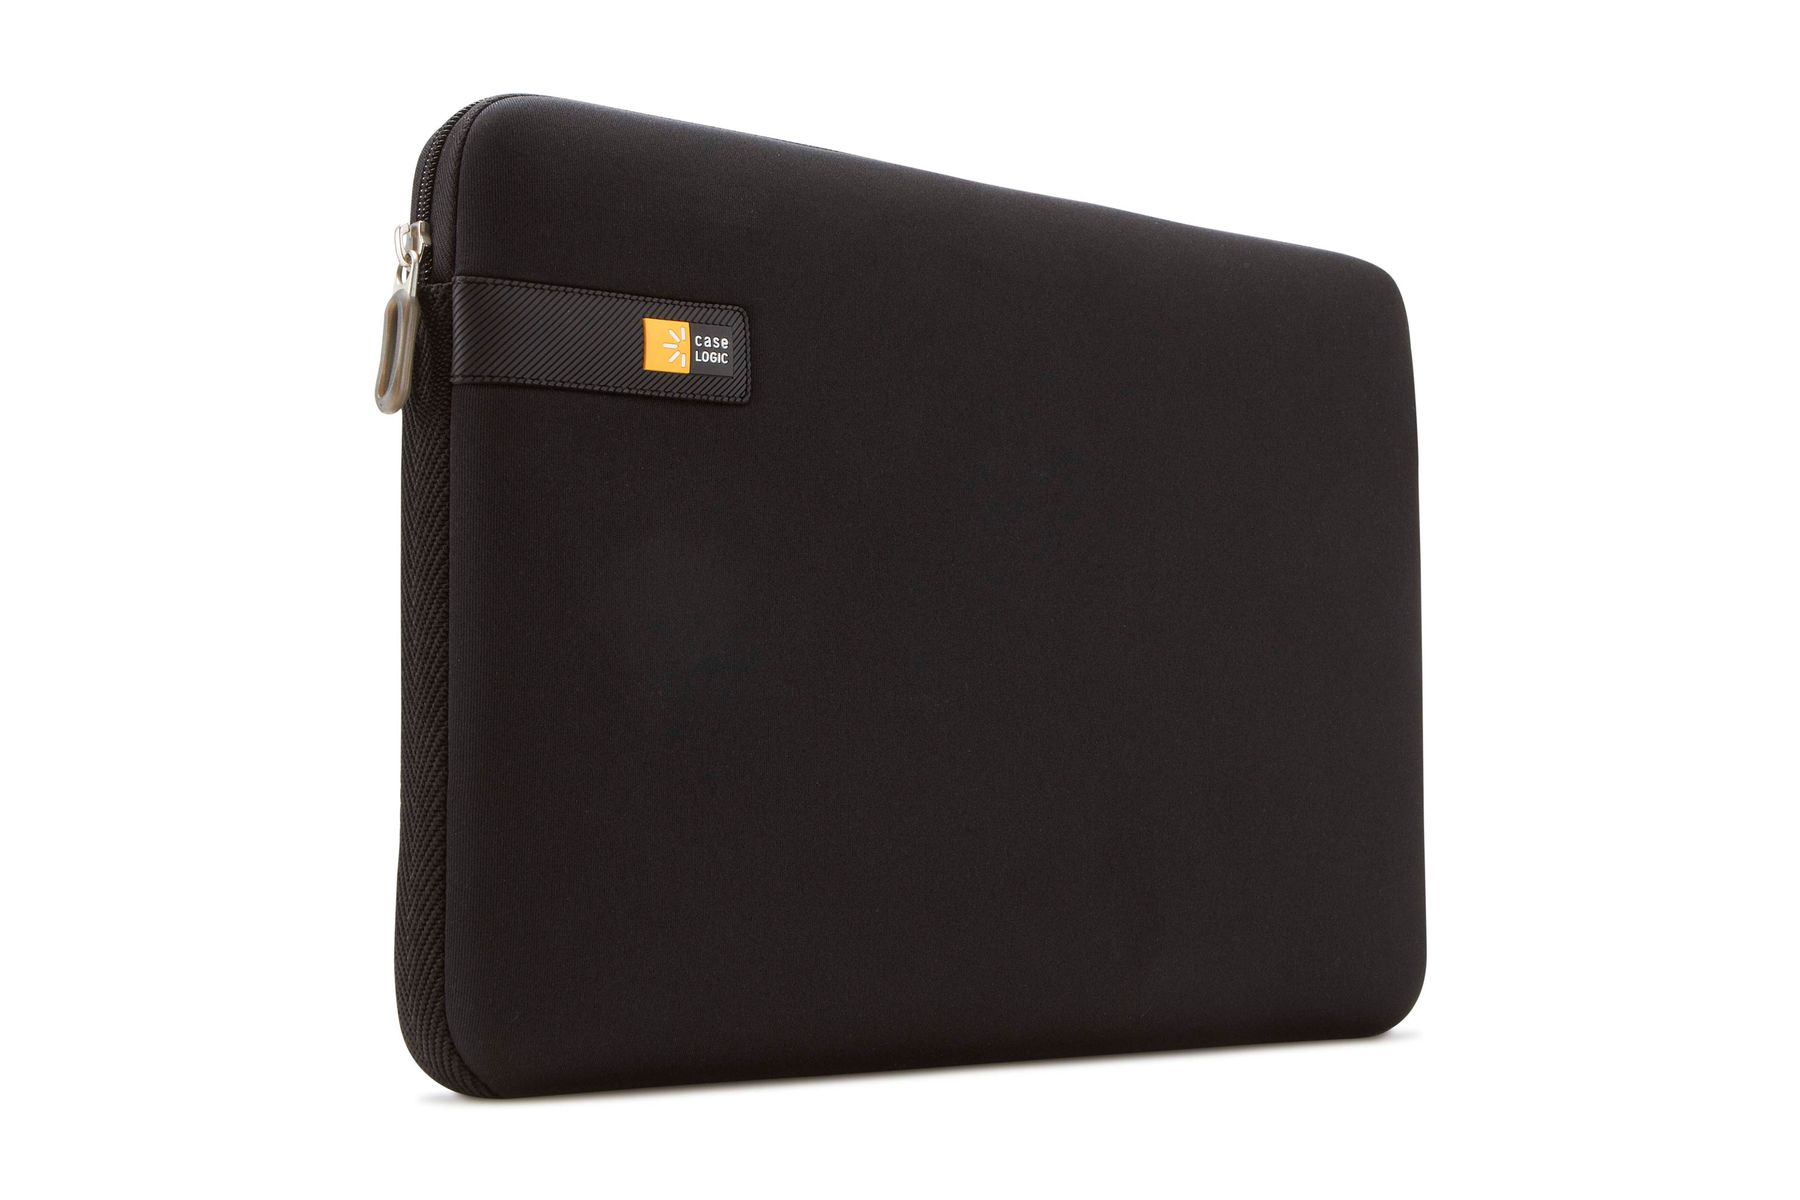 Case Logic 14 Laptop Backpack Bag Red - DLBP114R – Starlite